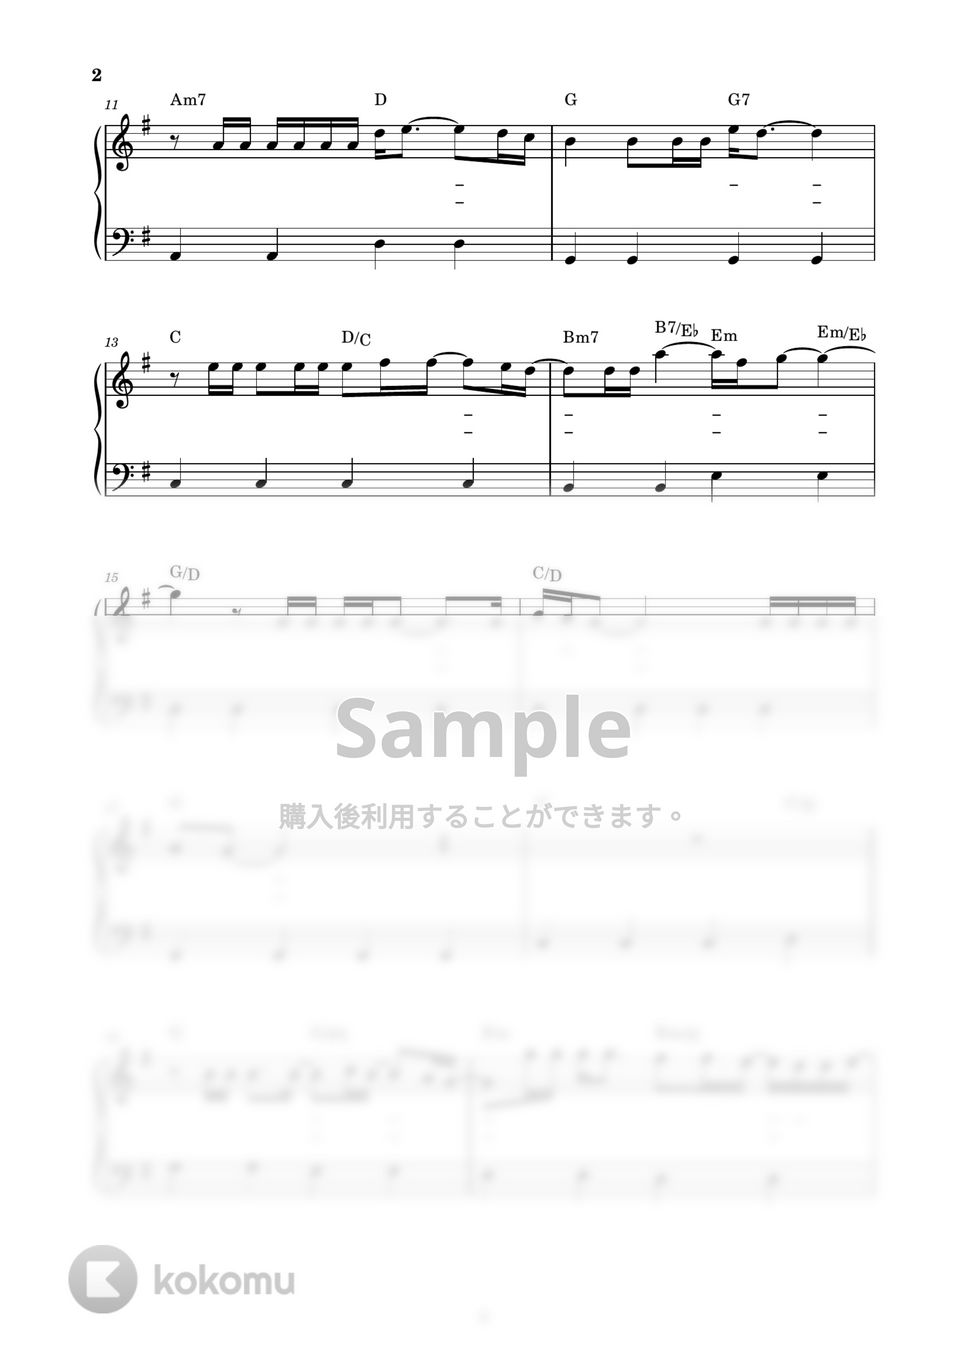 チューリップ - 青春の影 (ピアノ楽譜 / かんたん両手 / 歌詞付き / ドレミ付き / 初心者向き) by piano.tokyo